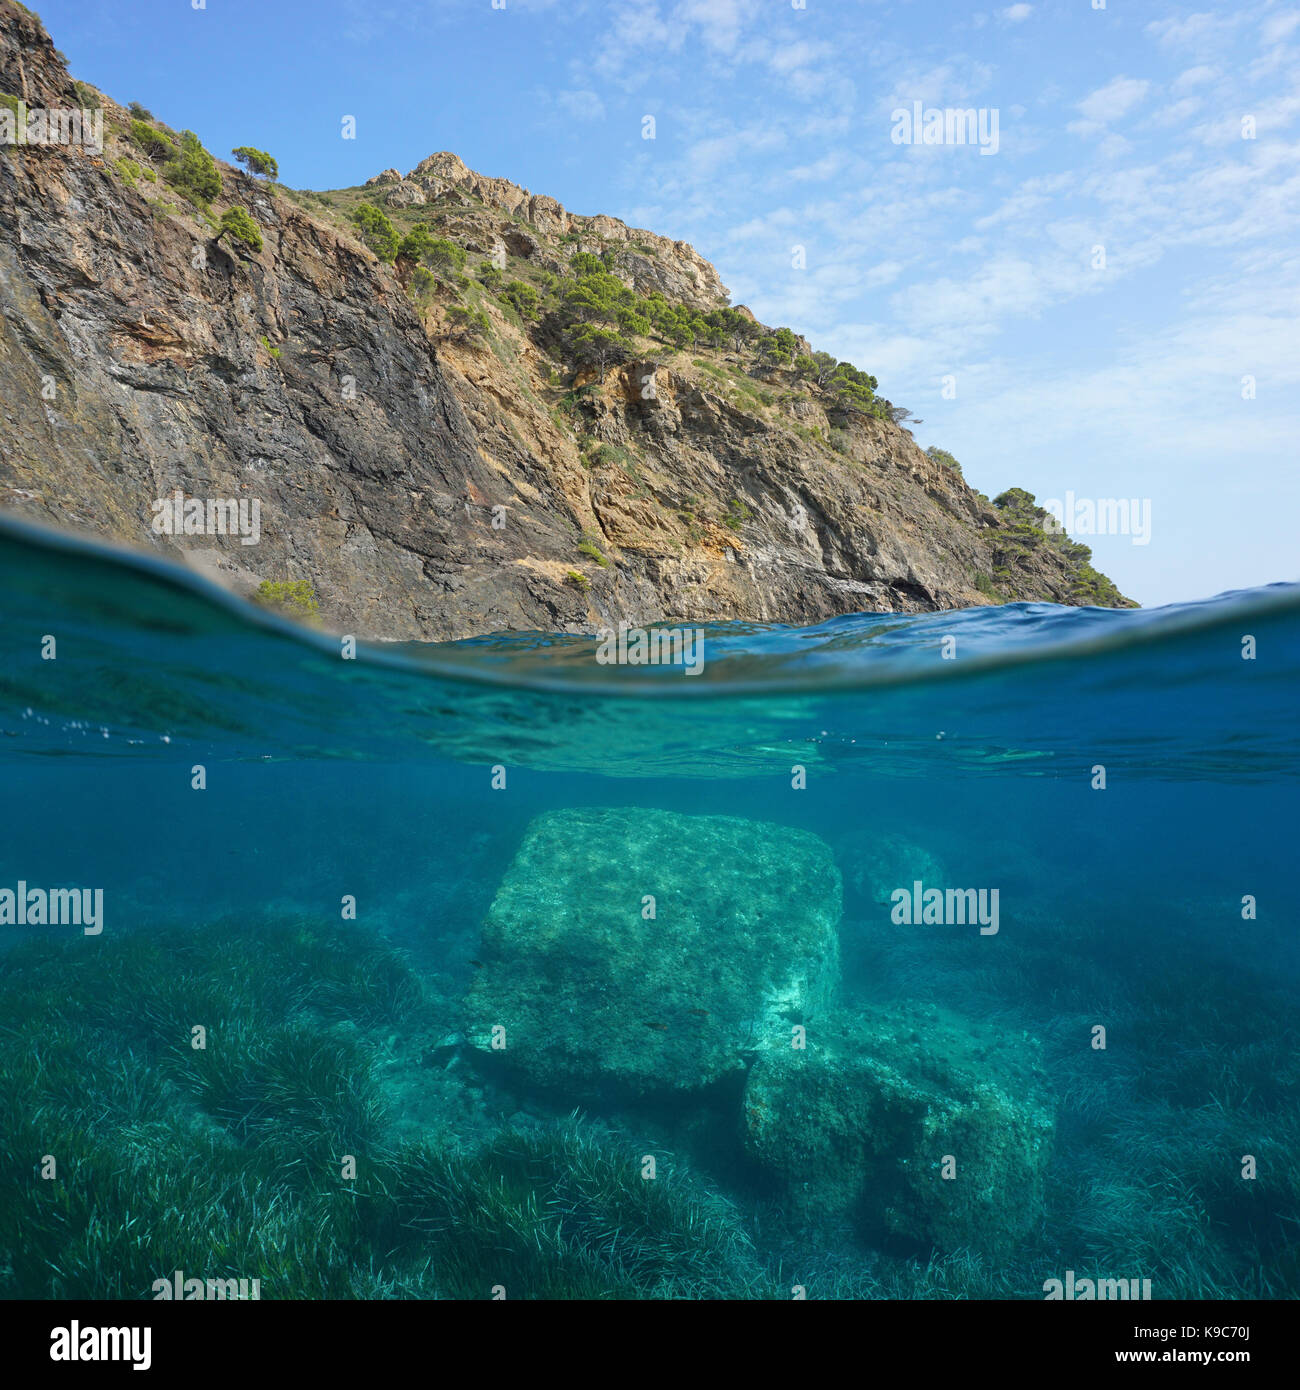 Il paesaggio costiero al di sopra e al di sotto della superficie dell'acqua, scogliera con rocce e Neptune erba subacquea, mare mediterraneo, cap norfeu, Costa Brava, SPAGNA Foto Stock